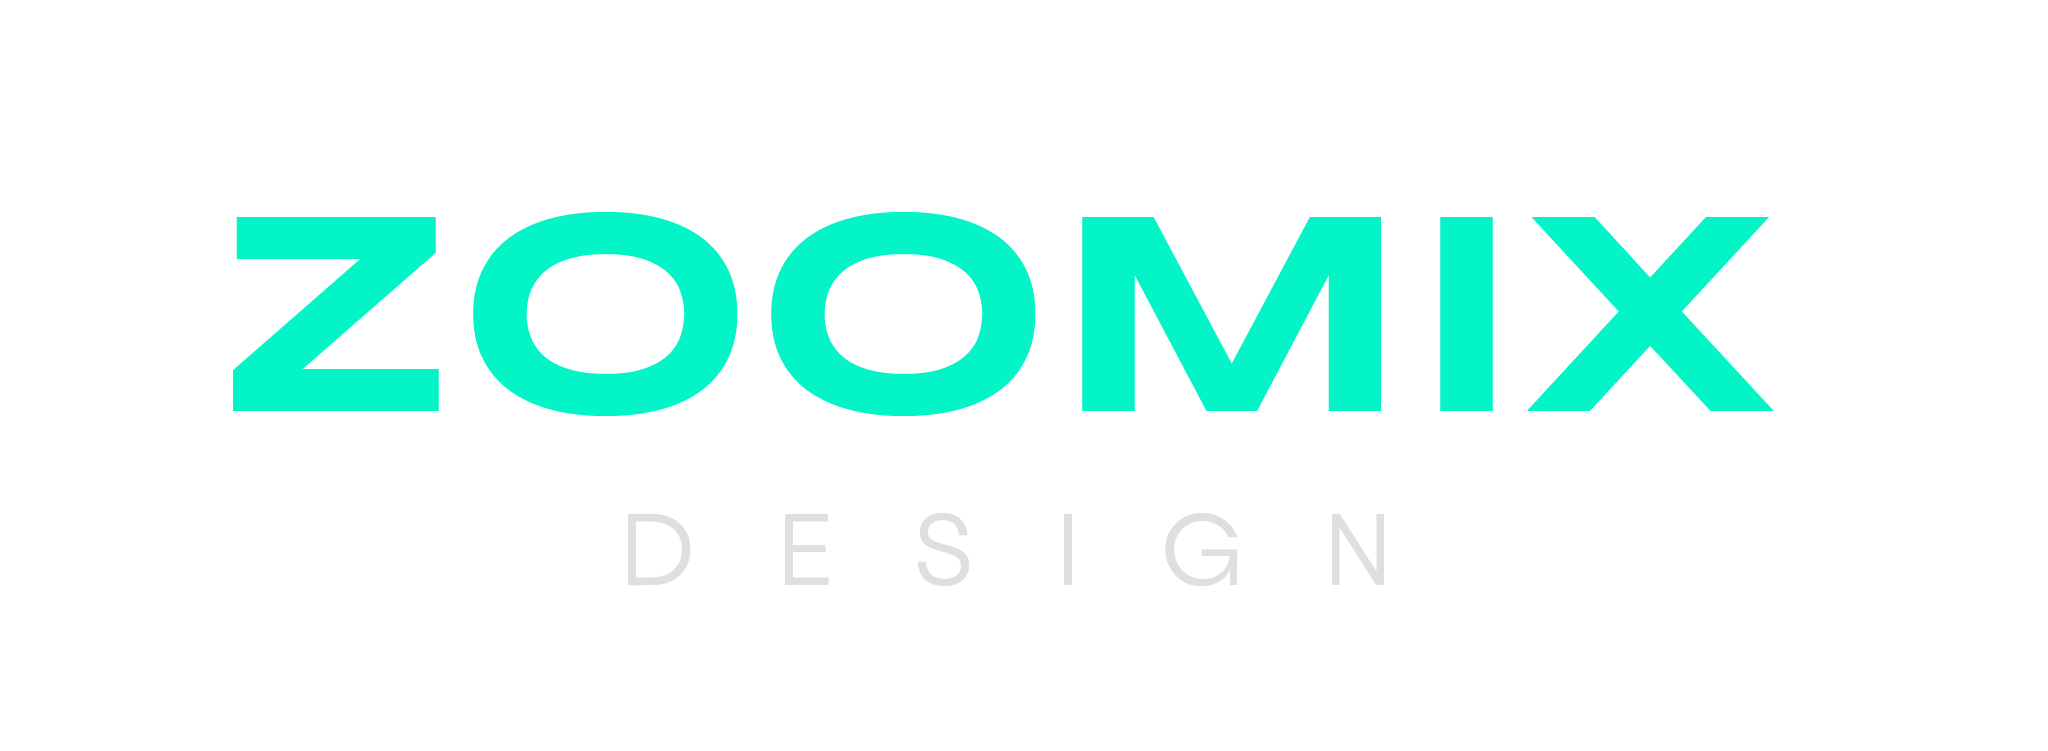 zoomix logo